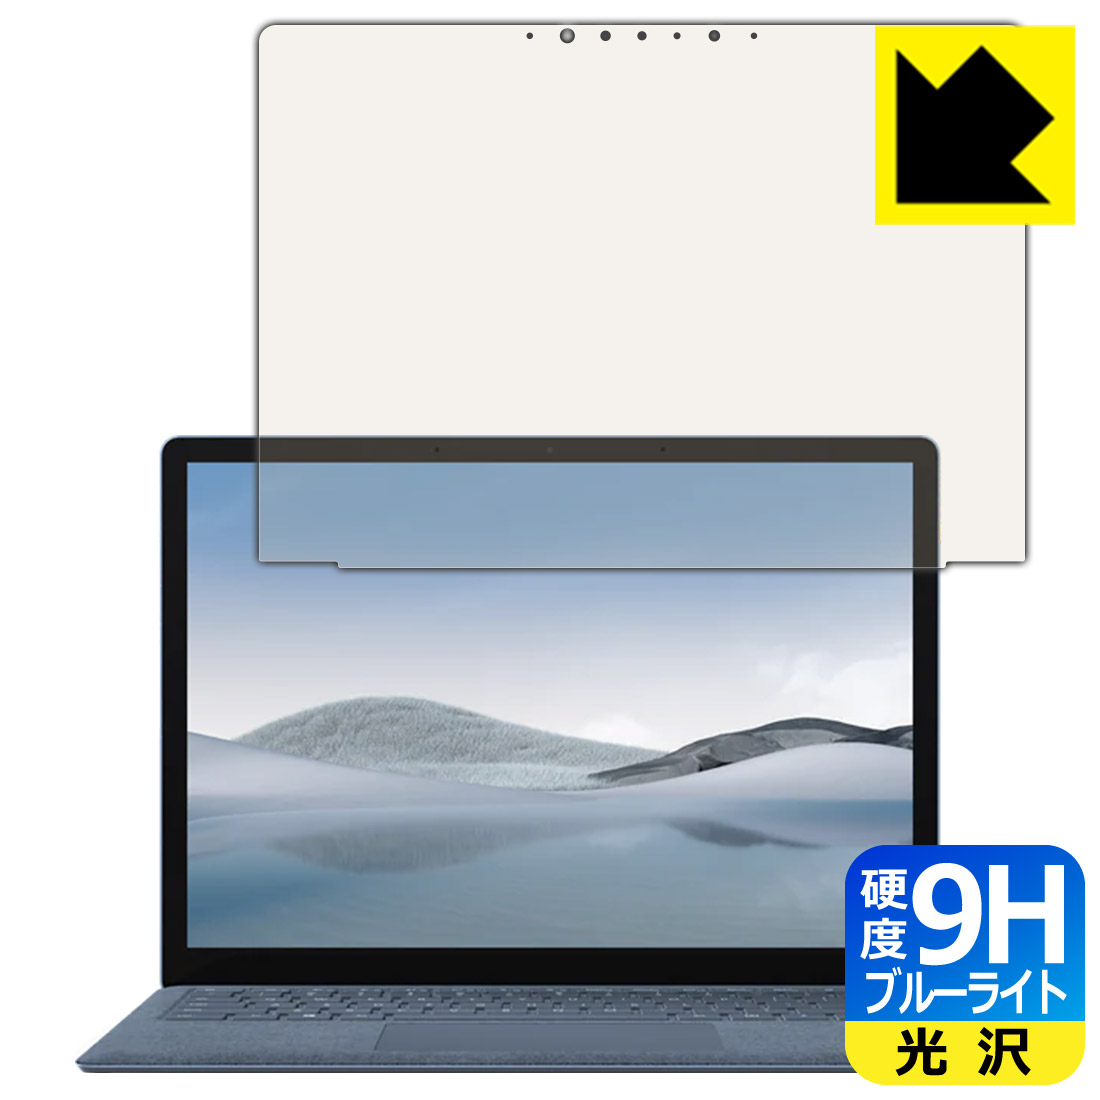 9H高硬度 ブルーライトカット 新作 タイプ Surface Laptop 4 13.5インチ 液晶用 smtb-kd SALE 保護フィルム 専用保護フィルム 2021年4月発売モデル 保護シート